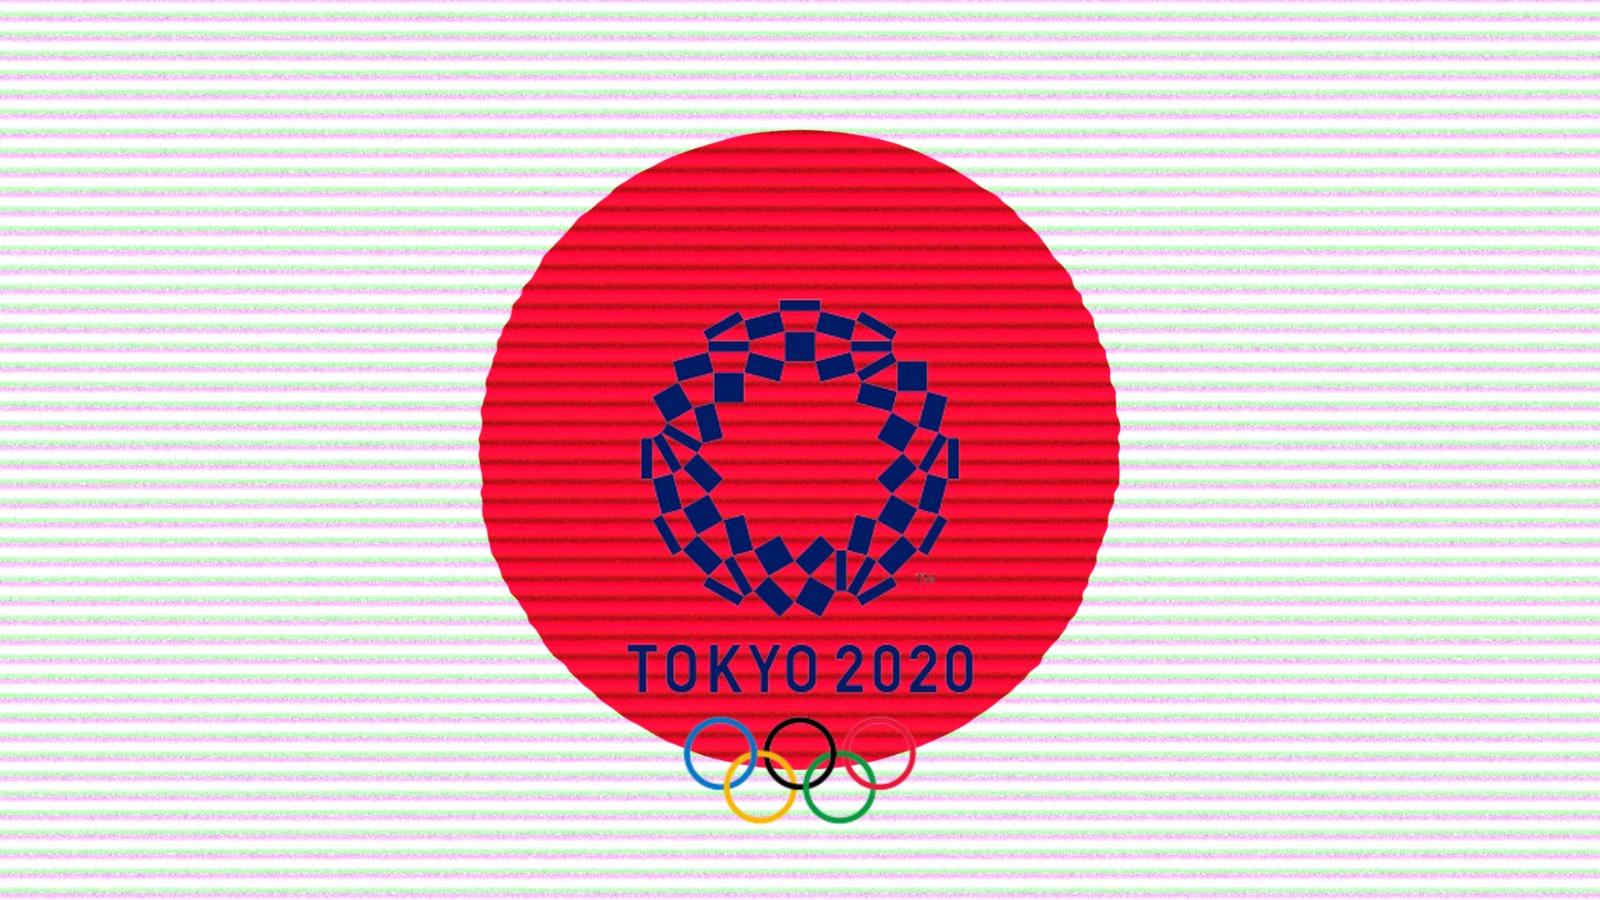 Le Olimpiadi di Tokyo saranno le più sostenibili di sempre?